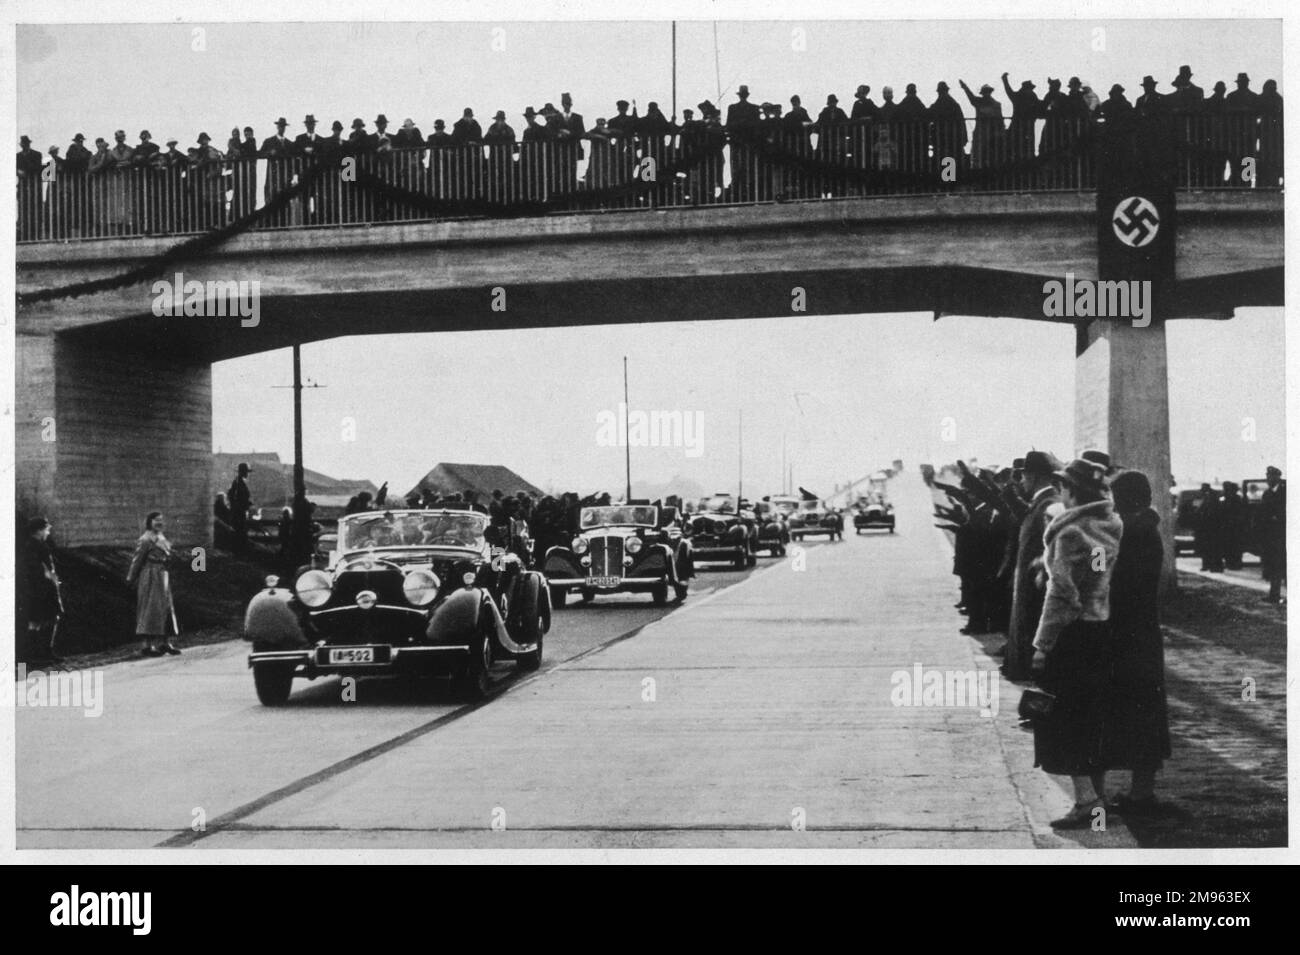 Aufgeregte Menschenmassen versammeln sich auf einer Brücke, um einer Reihe offizieller Nazi-Fahrzeuge auf einer neu eröffneten Autobahn zuzusehen. Stockfoto